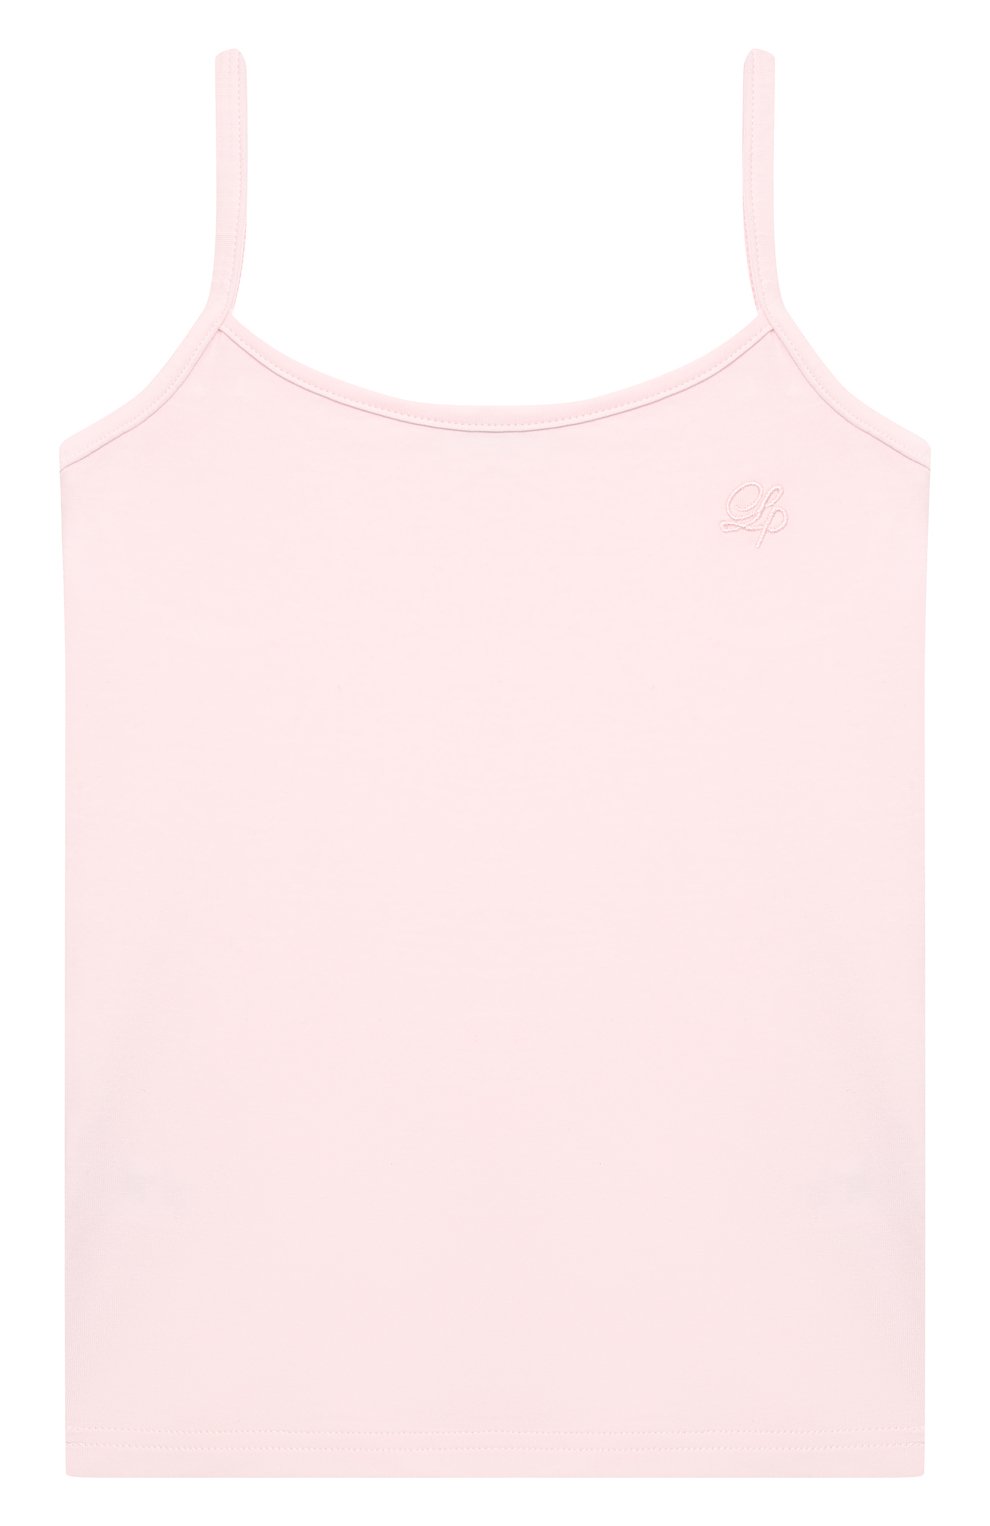 Майка LA PERLA детская розового цвета — купить в интернет-магазине ЦУМ,арт. 51035/8A-14A